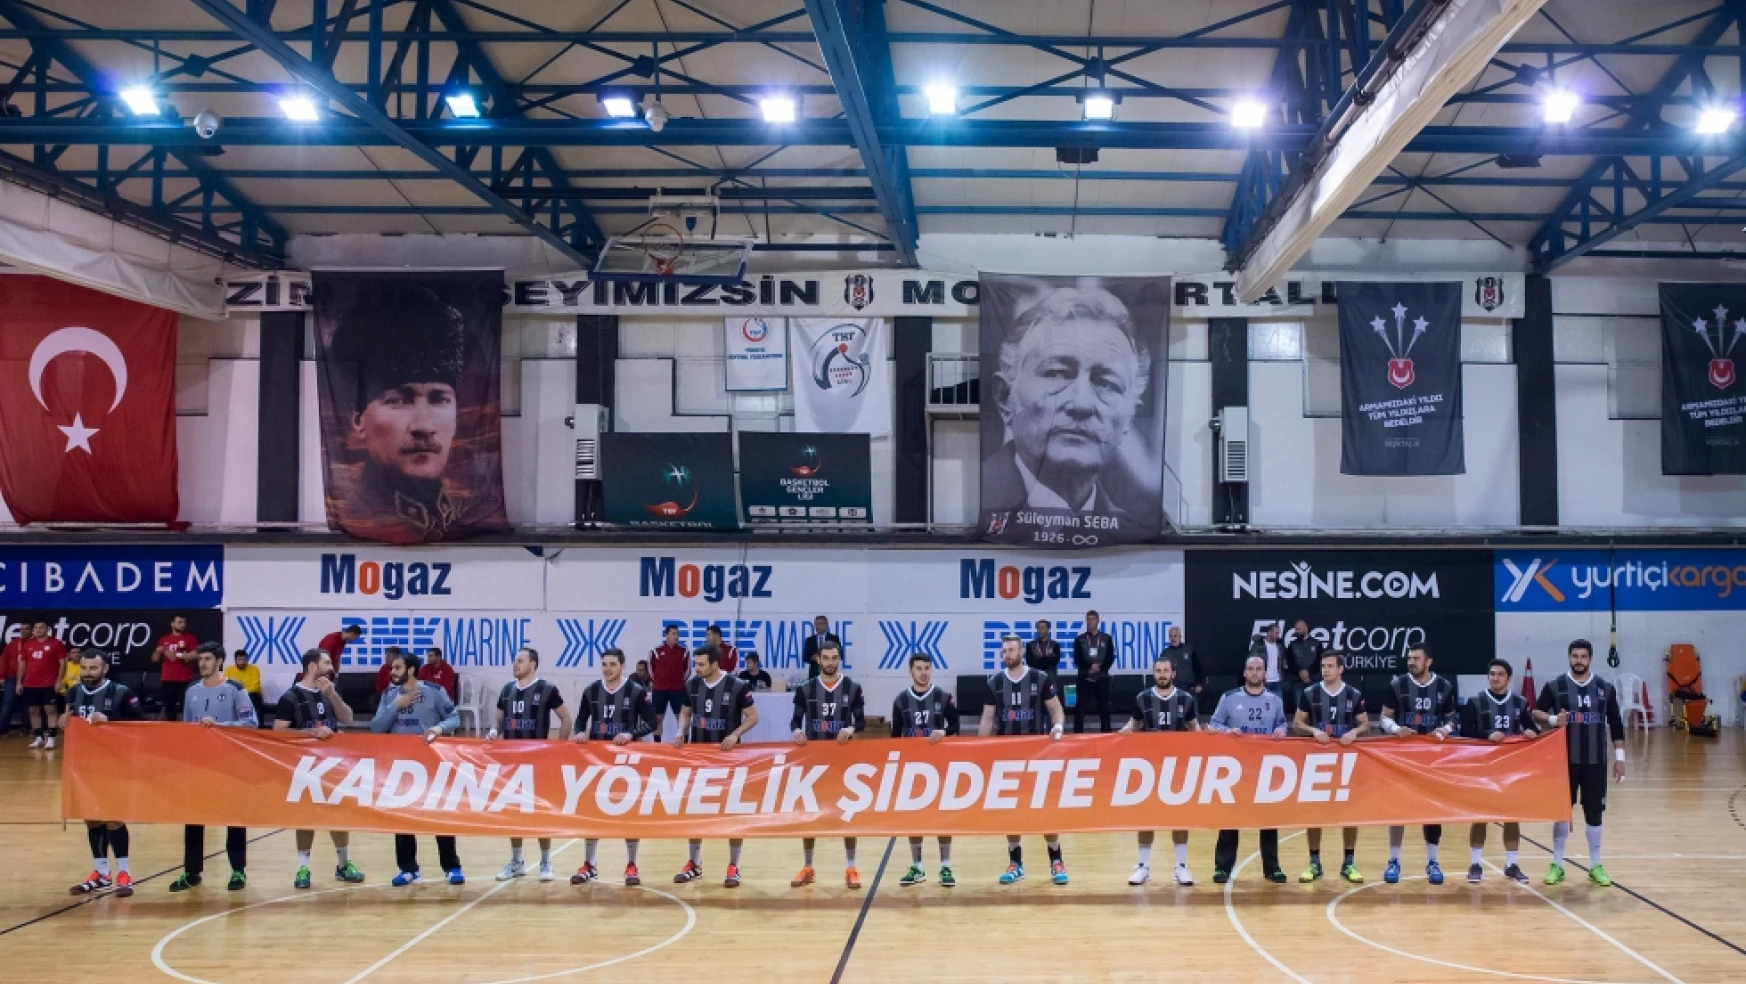 Beşiktaş Mogaz’dan anlamlı pankart